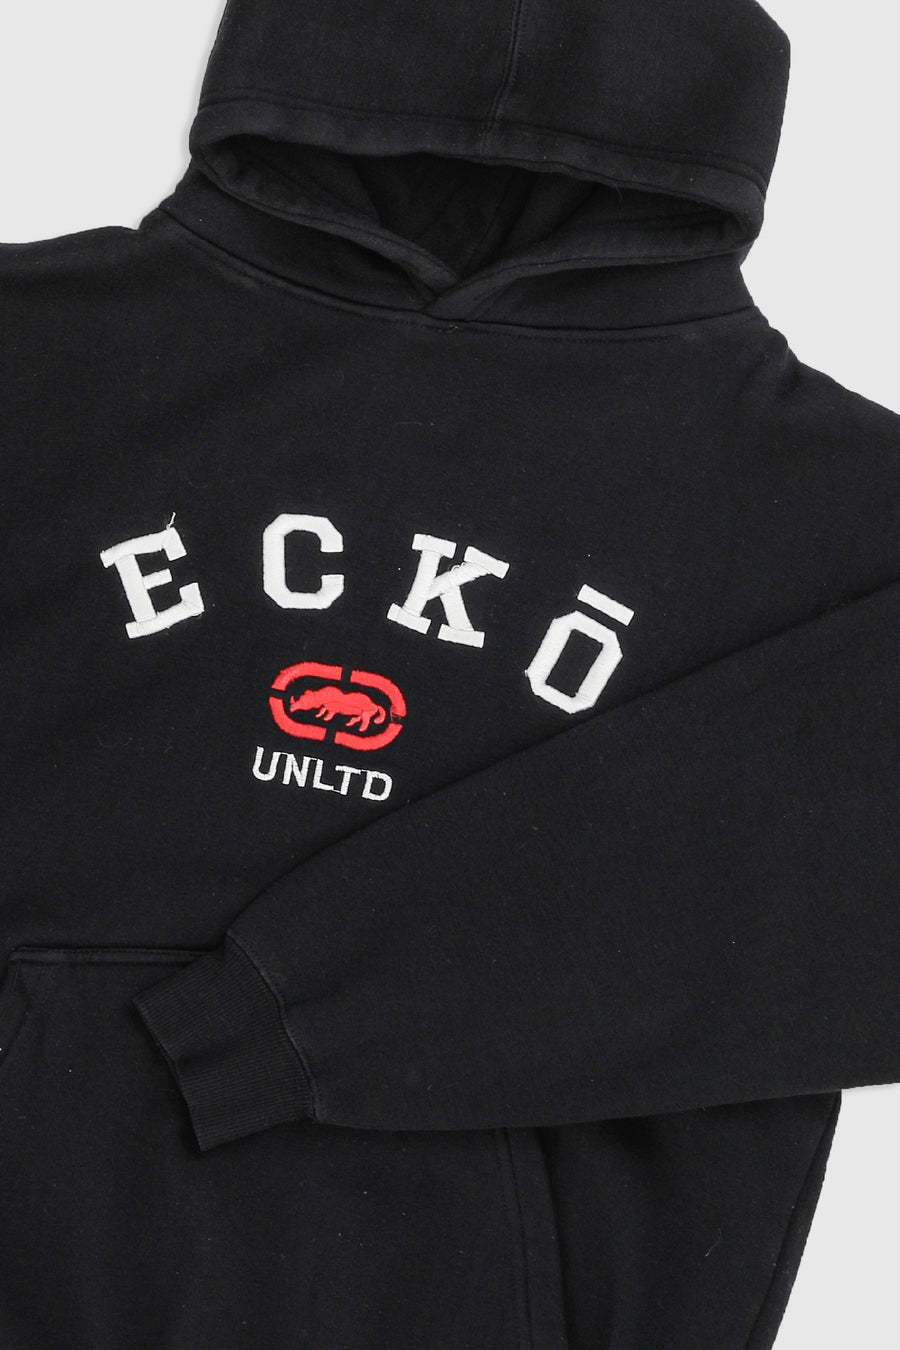 Vintage Ecko Hooded Sweatshirt - M